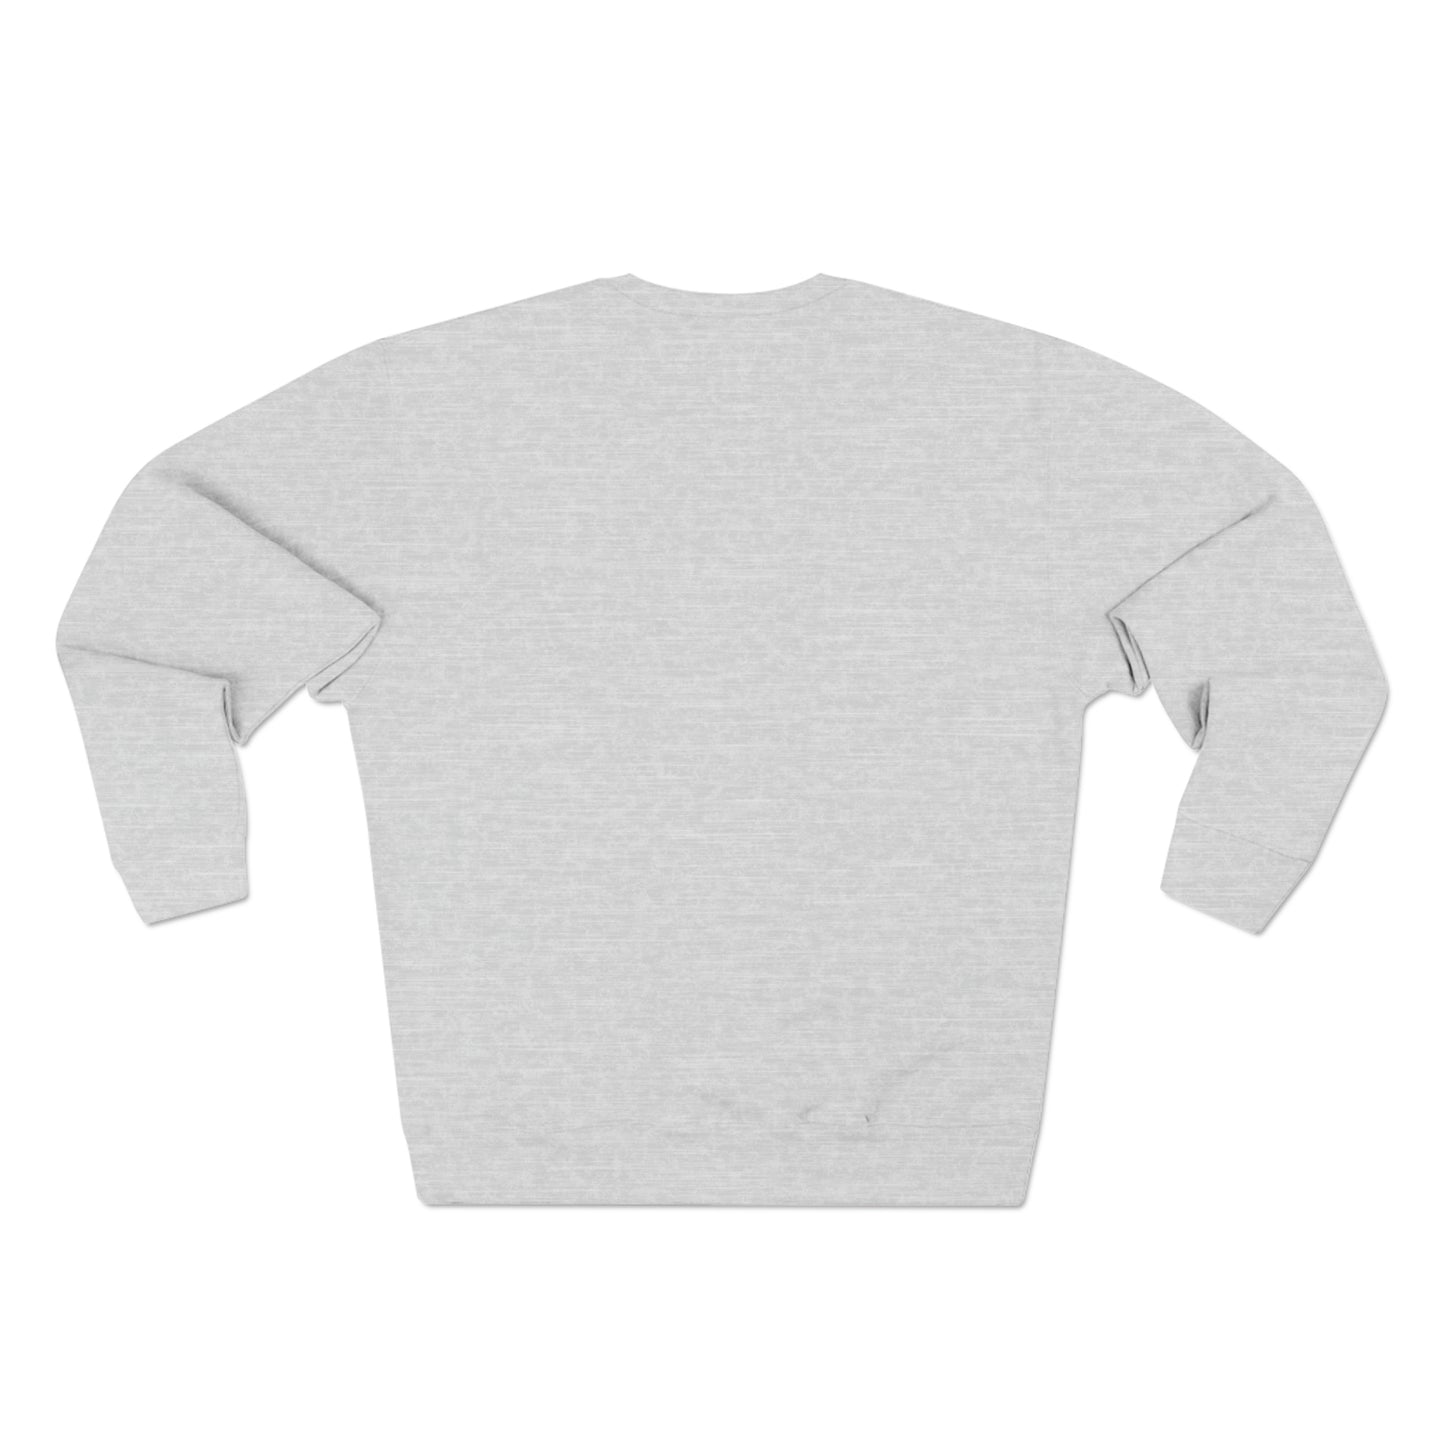 BG "Eat, Surf, Sleep - Repeat" Premium Crewneck Sweatshirt